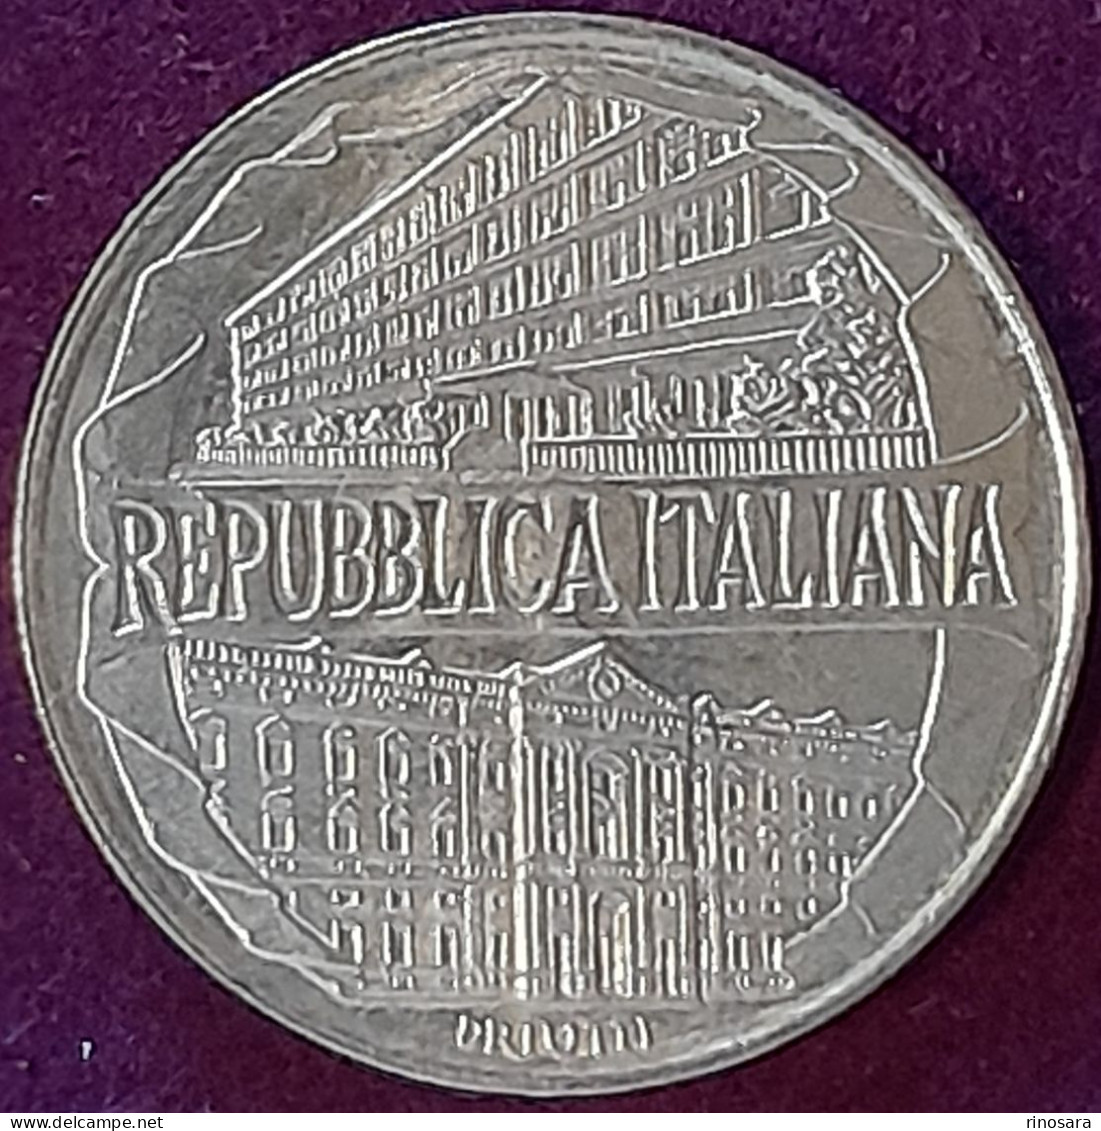 Errore Di Conio 200 Lire Repubblica Italiana Commemorativa Aacademia Navale - 200 Lire